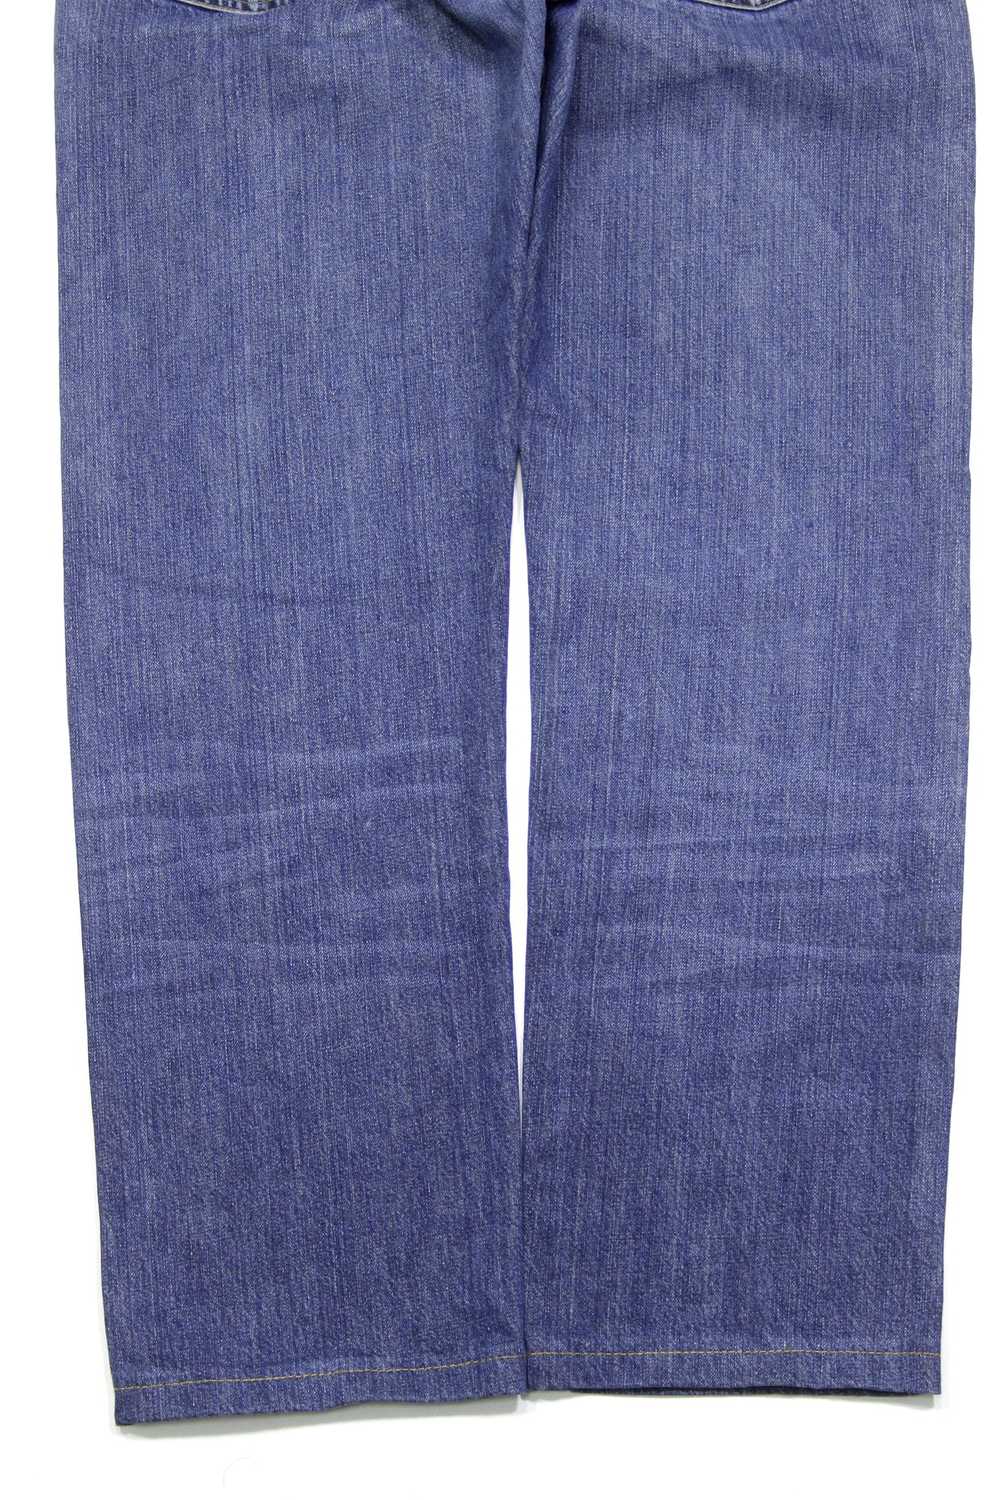 Gucci Vintage Web Stripes Sanded Jeans - image 6